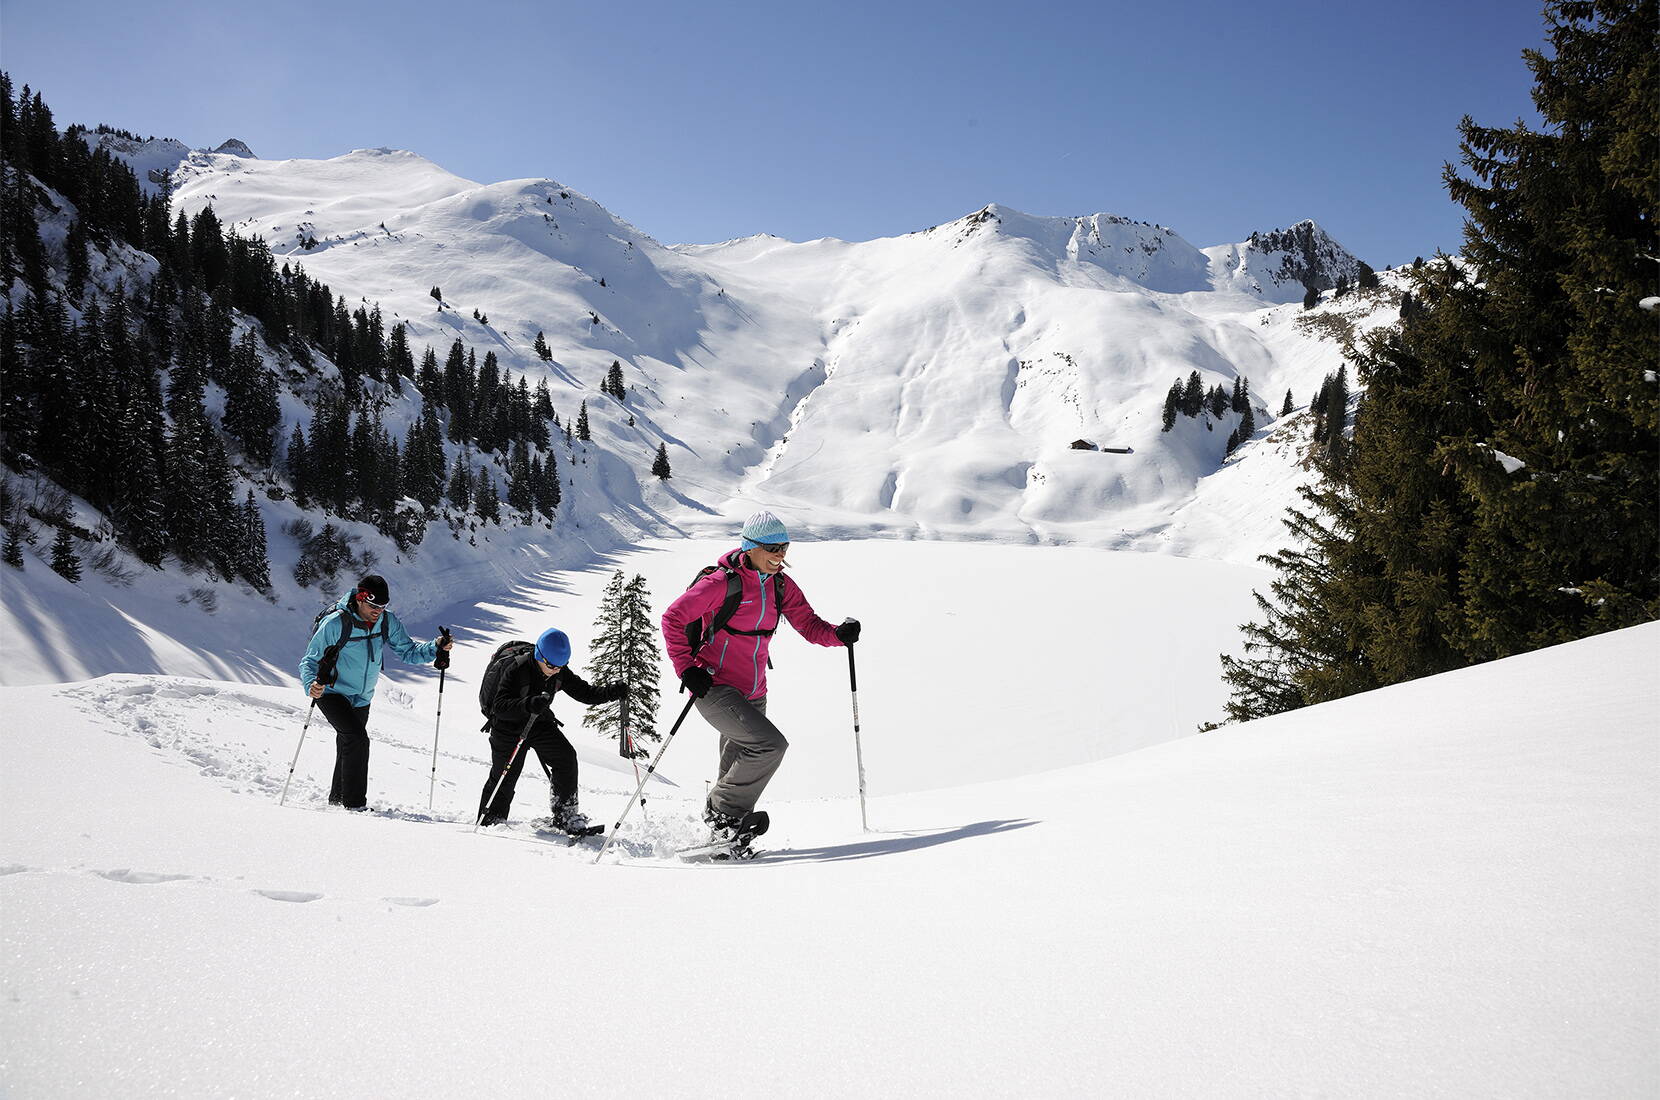 Familienausflug Schneeschuhlaufen Stockhorn. Mach dich auf den Weg, um mit den Schneeschuhen das tief verschneite Stockhorngebiet zu entdecken. Ob alleine oder in der Gruppe auf einer geführten Tour, die weiss glitzernde Winteridylle wird dich verzaubern!